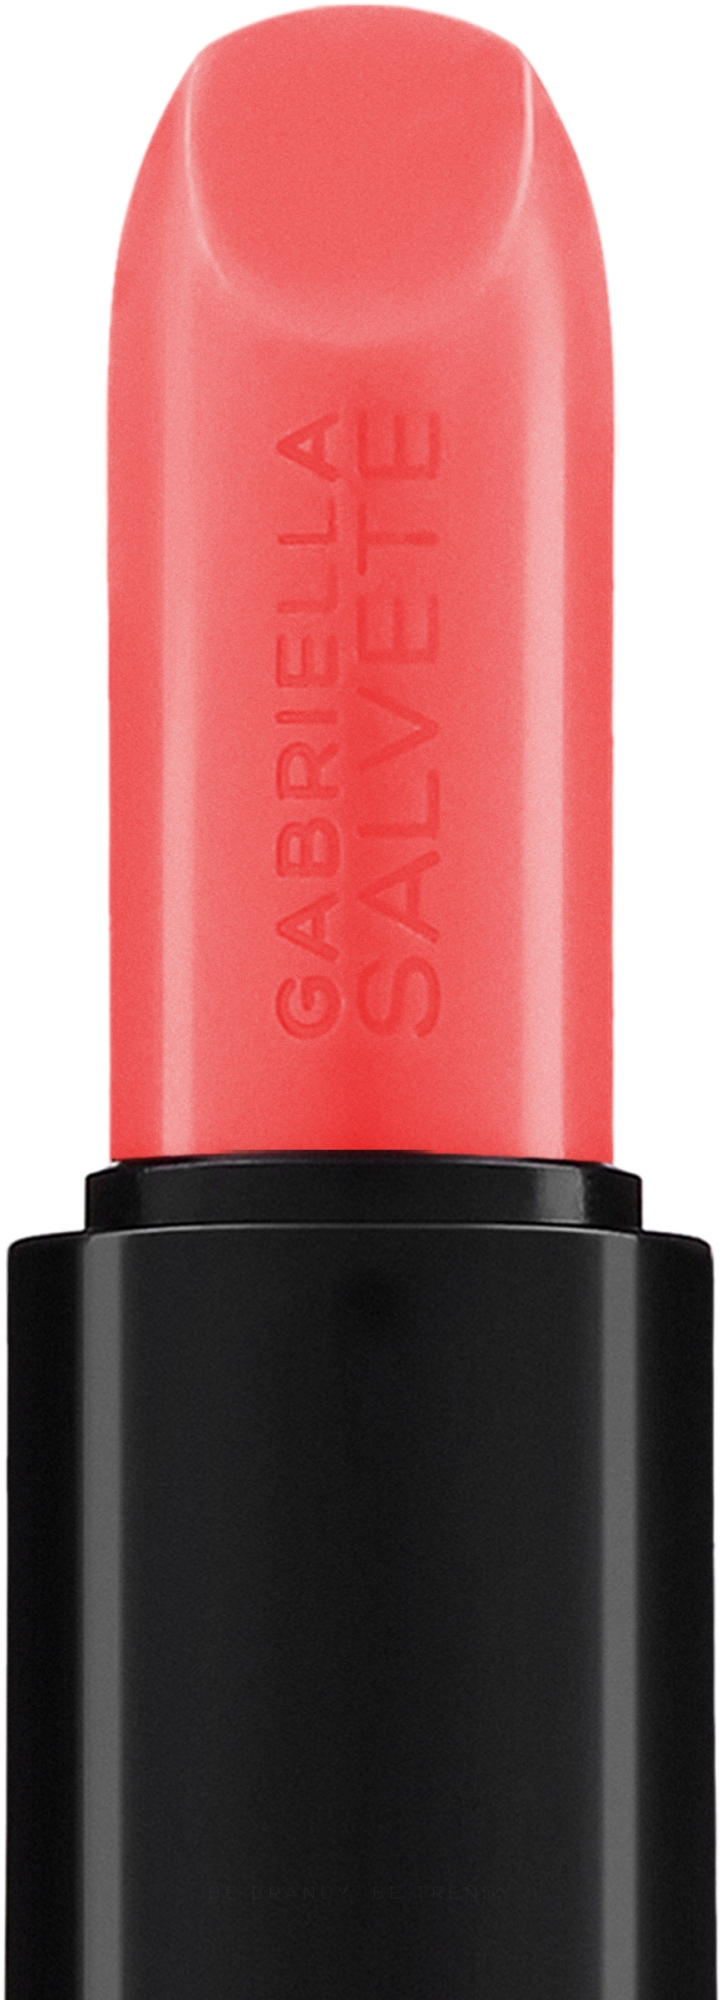 Lippenstift - Gabriella Salvete Red?s Lipstick — Bild 01 - Candy